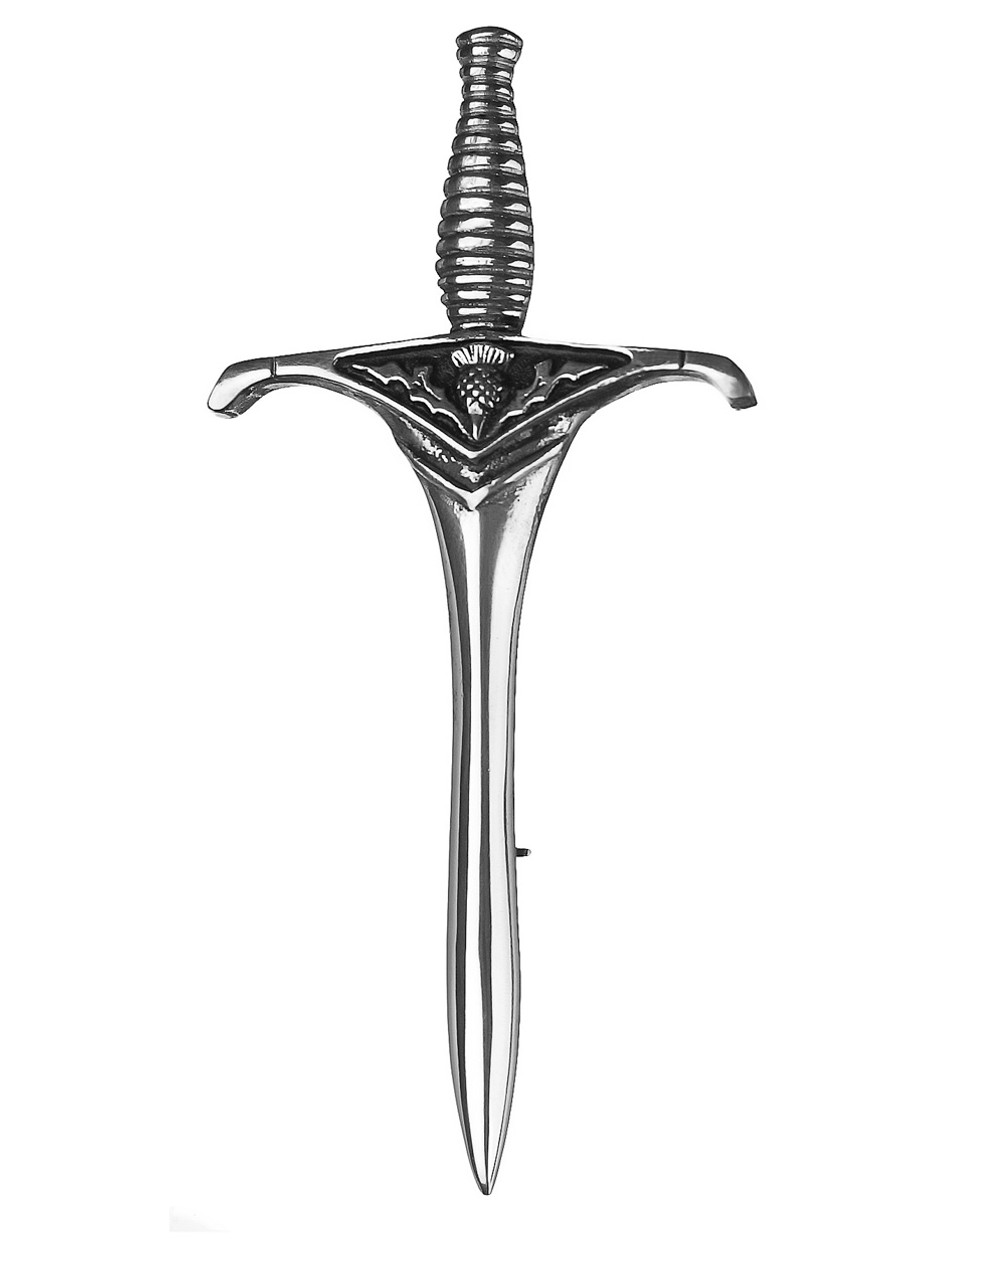 Thistle Sword Kilt Pin - Chrome (Glen Esk) - Henderson Imports